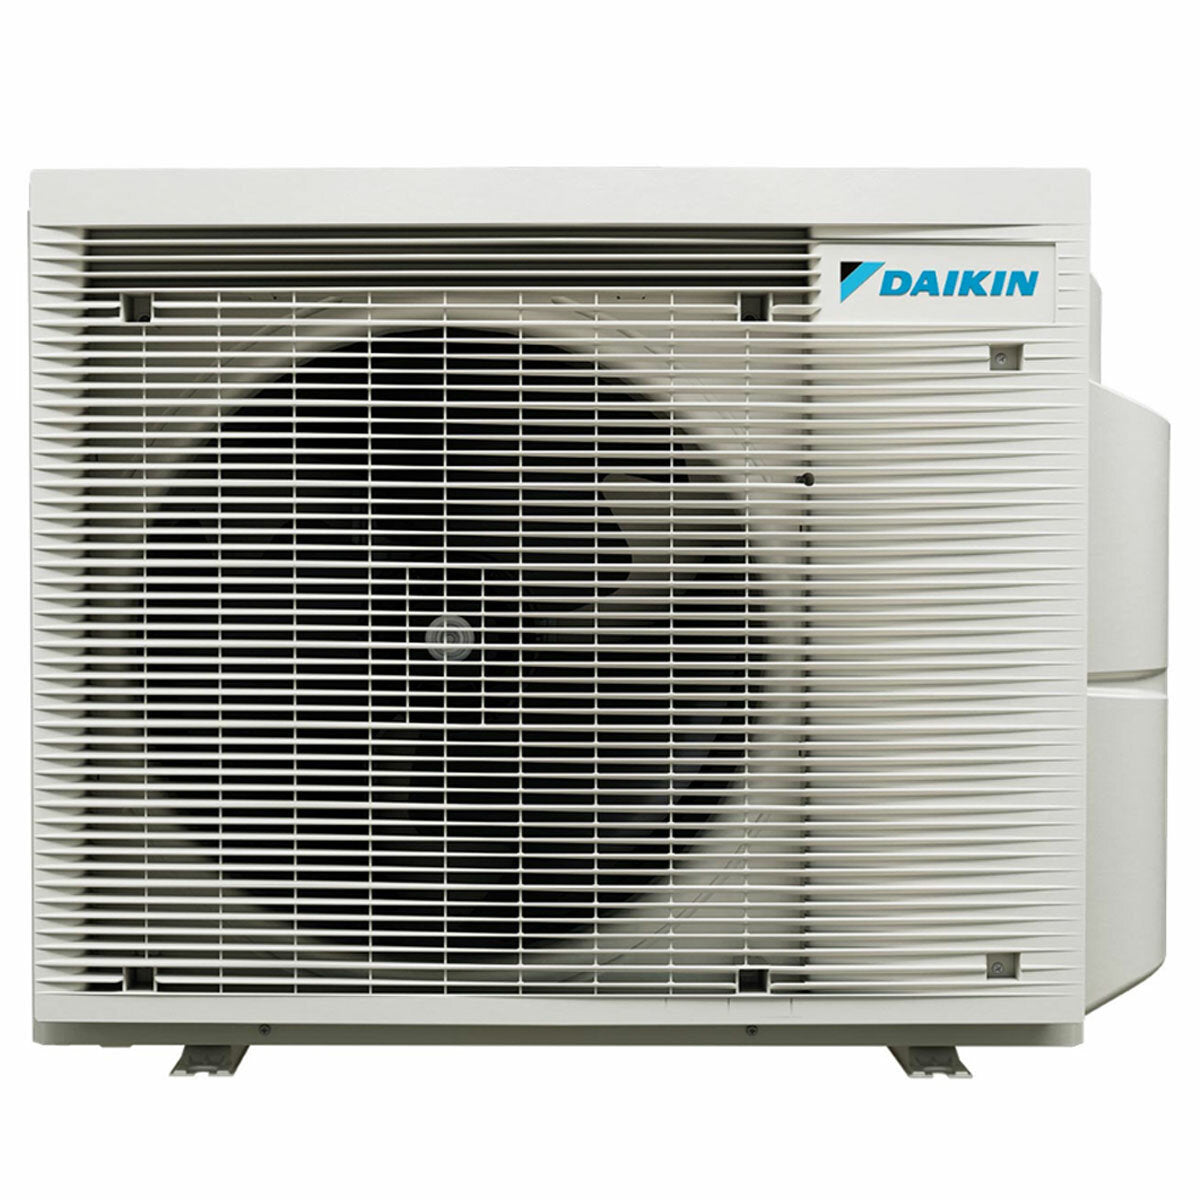 Daikin Emura 3 trial split air conditioner 7000+7000+9000 BTU inverter A++ wifi outdoor unit 4 kW Silver